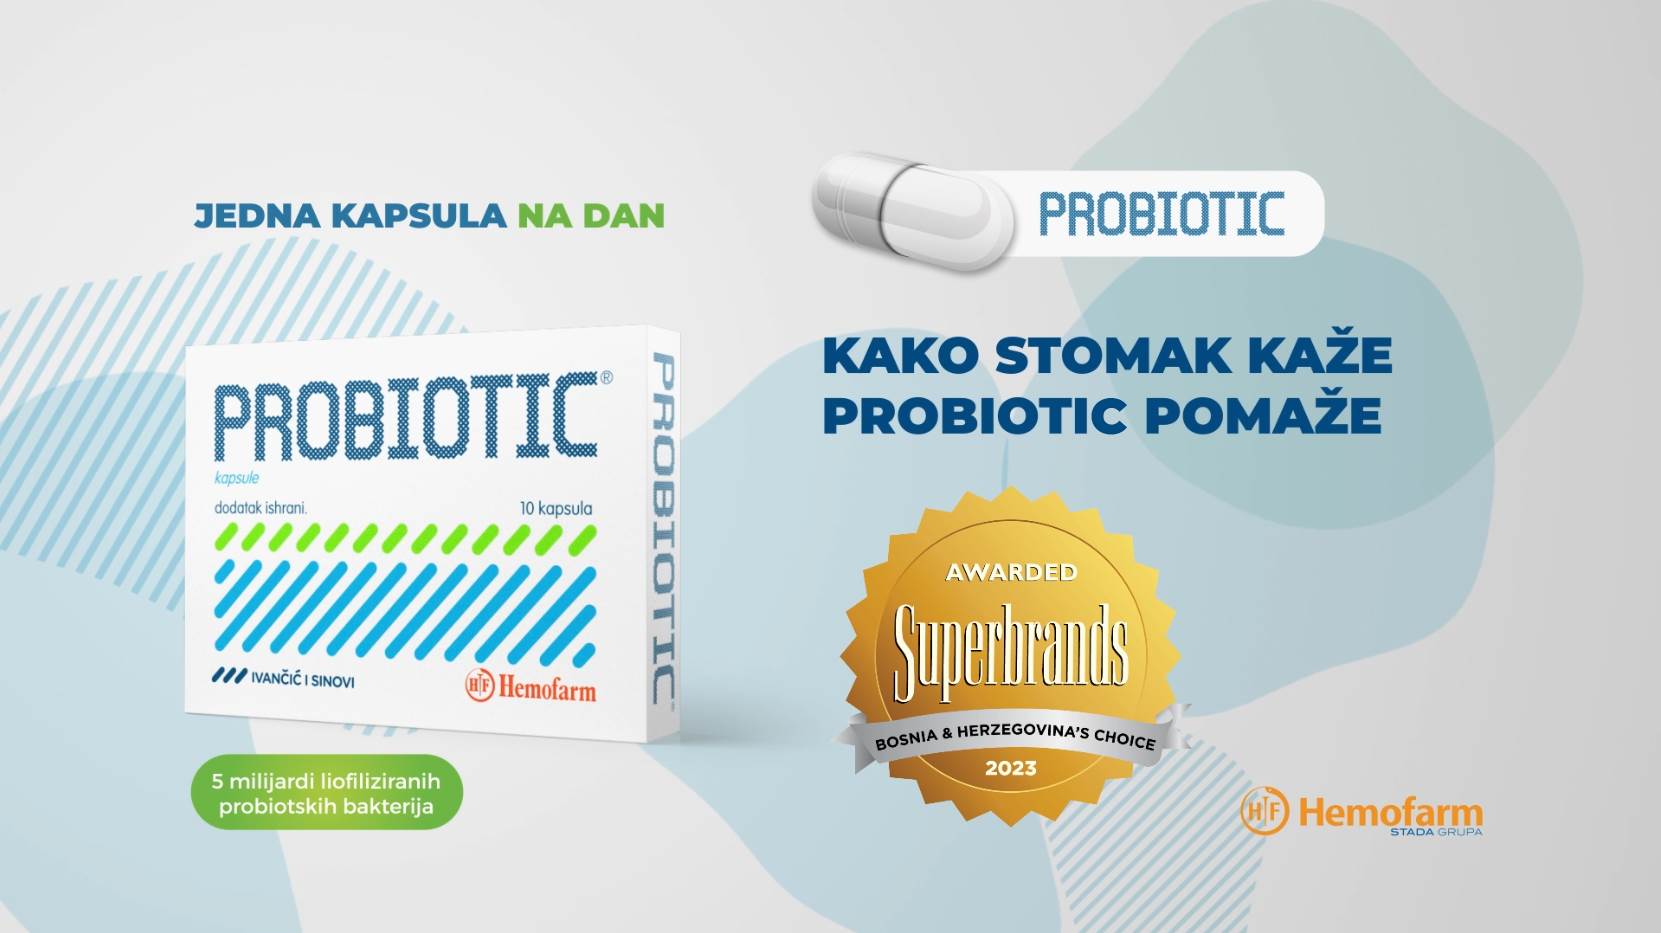  Hemofarmov Probiotic dobitnik priznanja Superbrands BiH 2023 